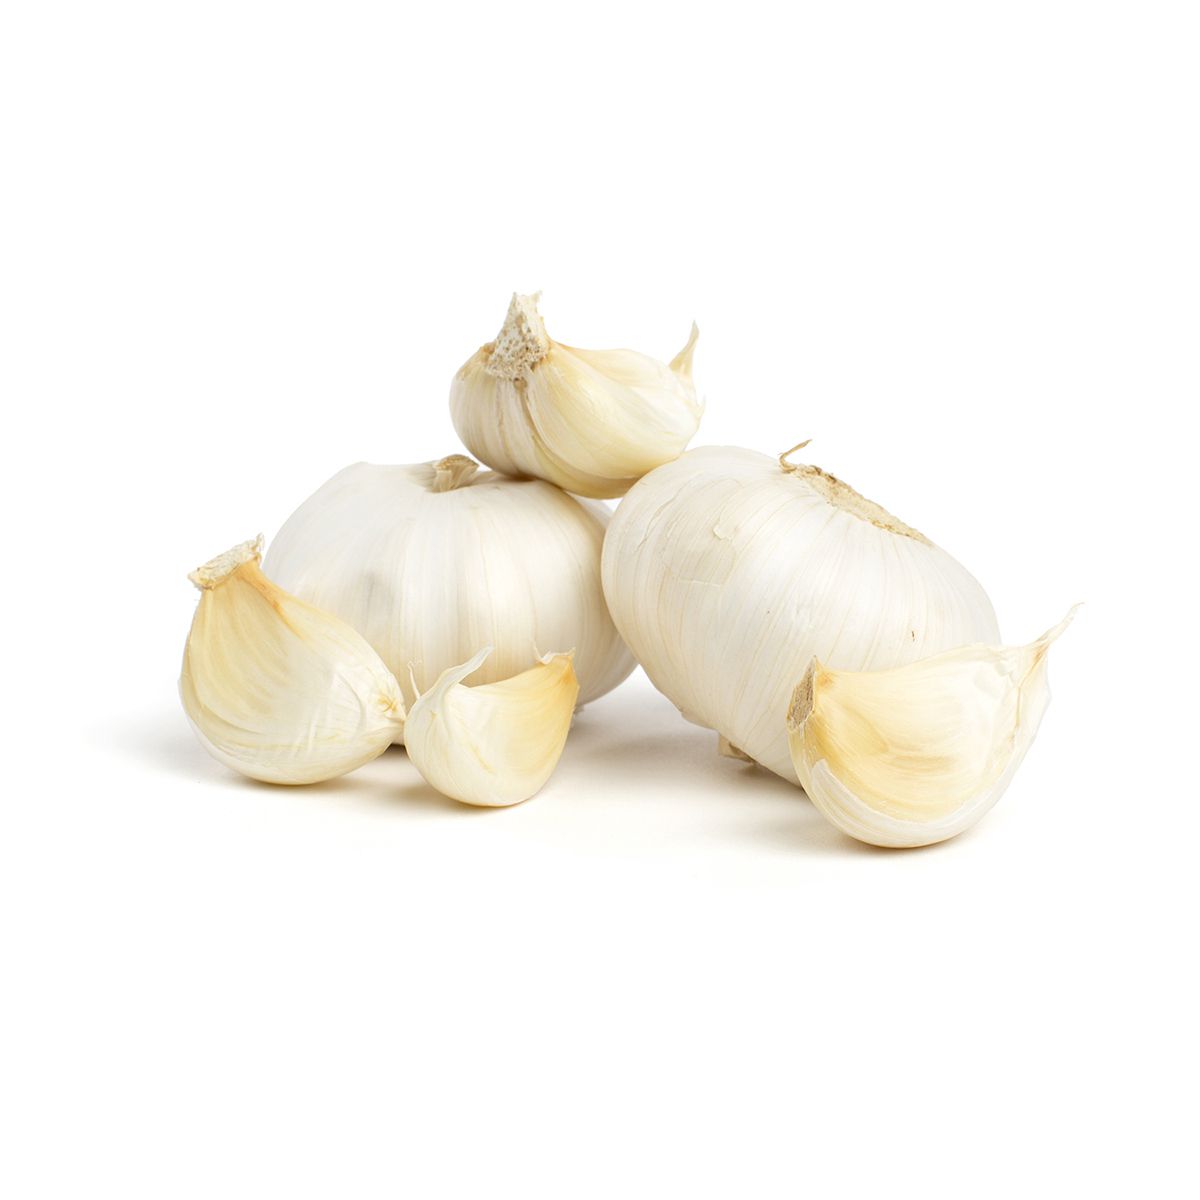 BoxNCase Whole Garlic